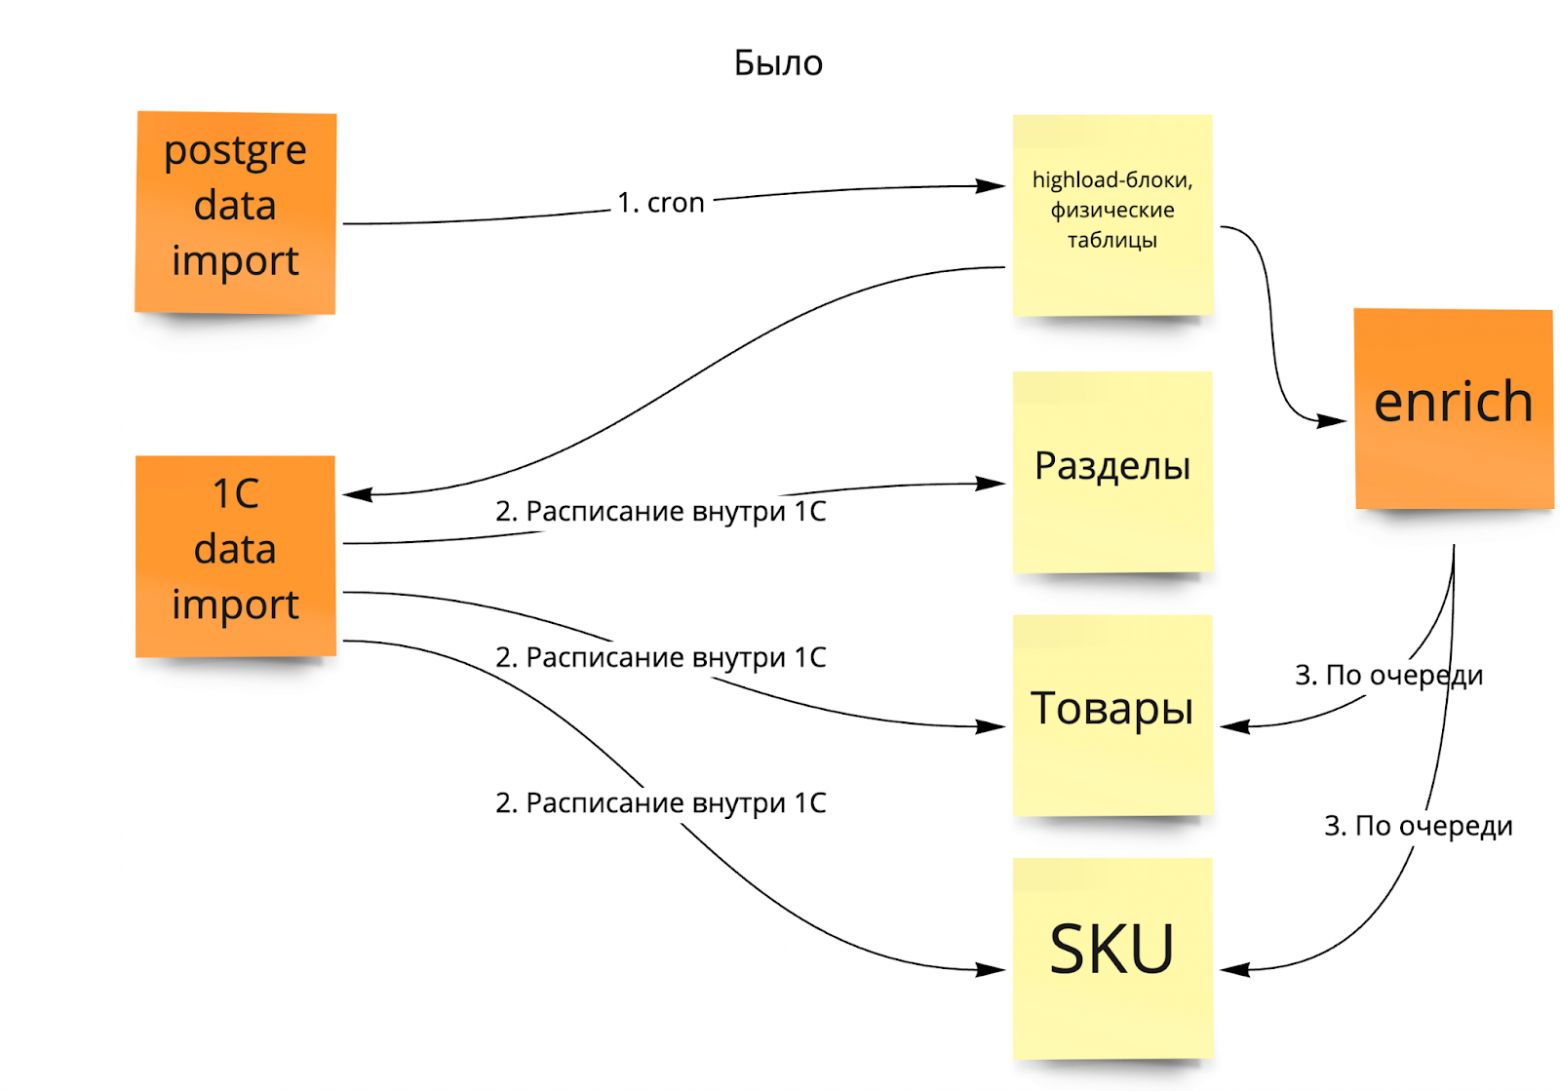 Cхема работы Enrich в связке с СУБД PostgreSQL